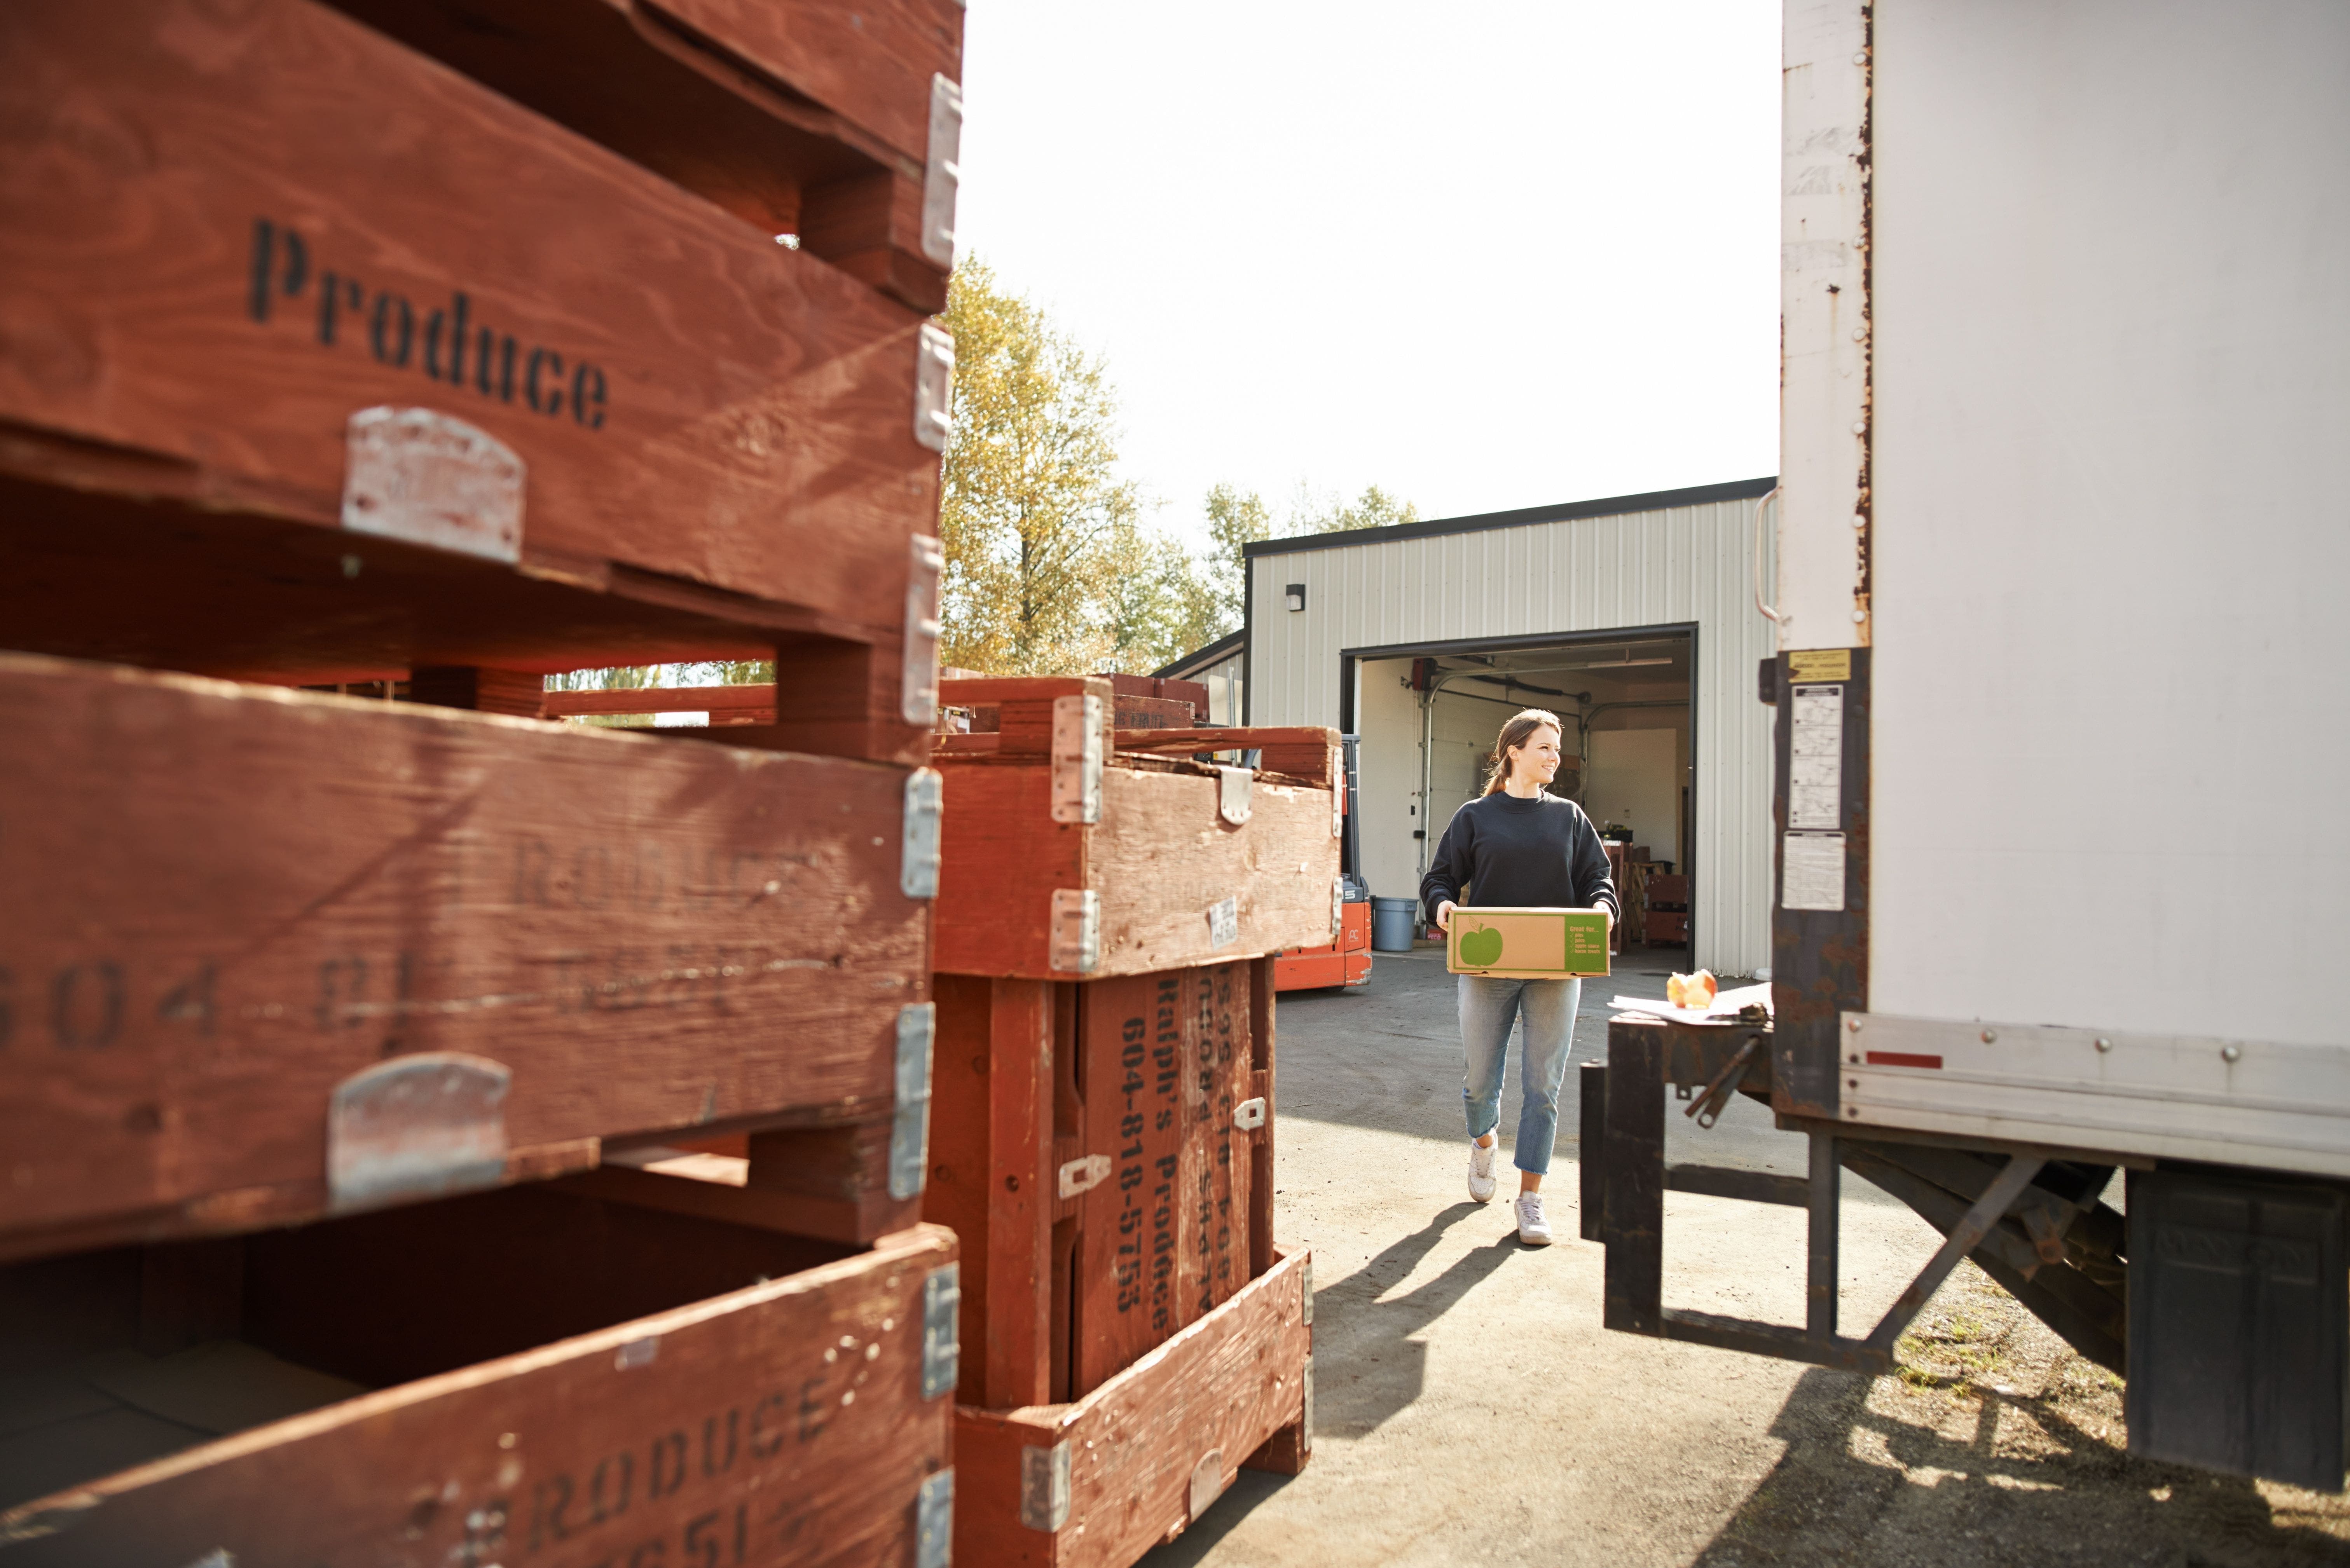 Warehouse exterior agribusiness loading produce skids